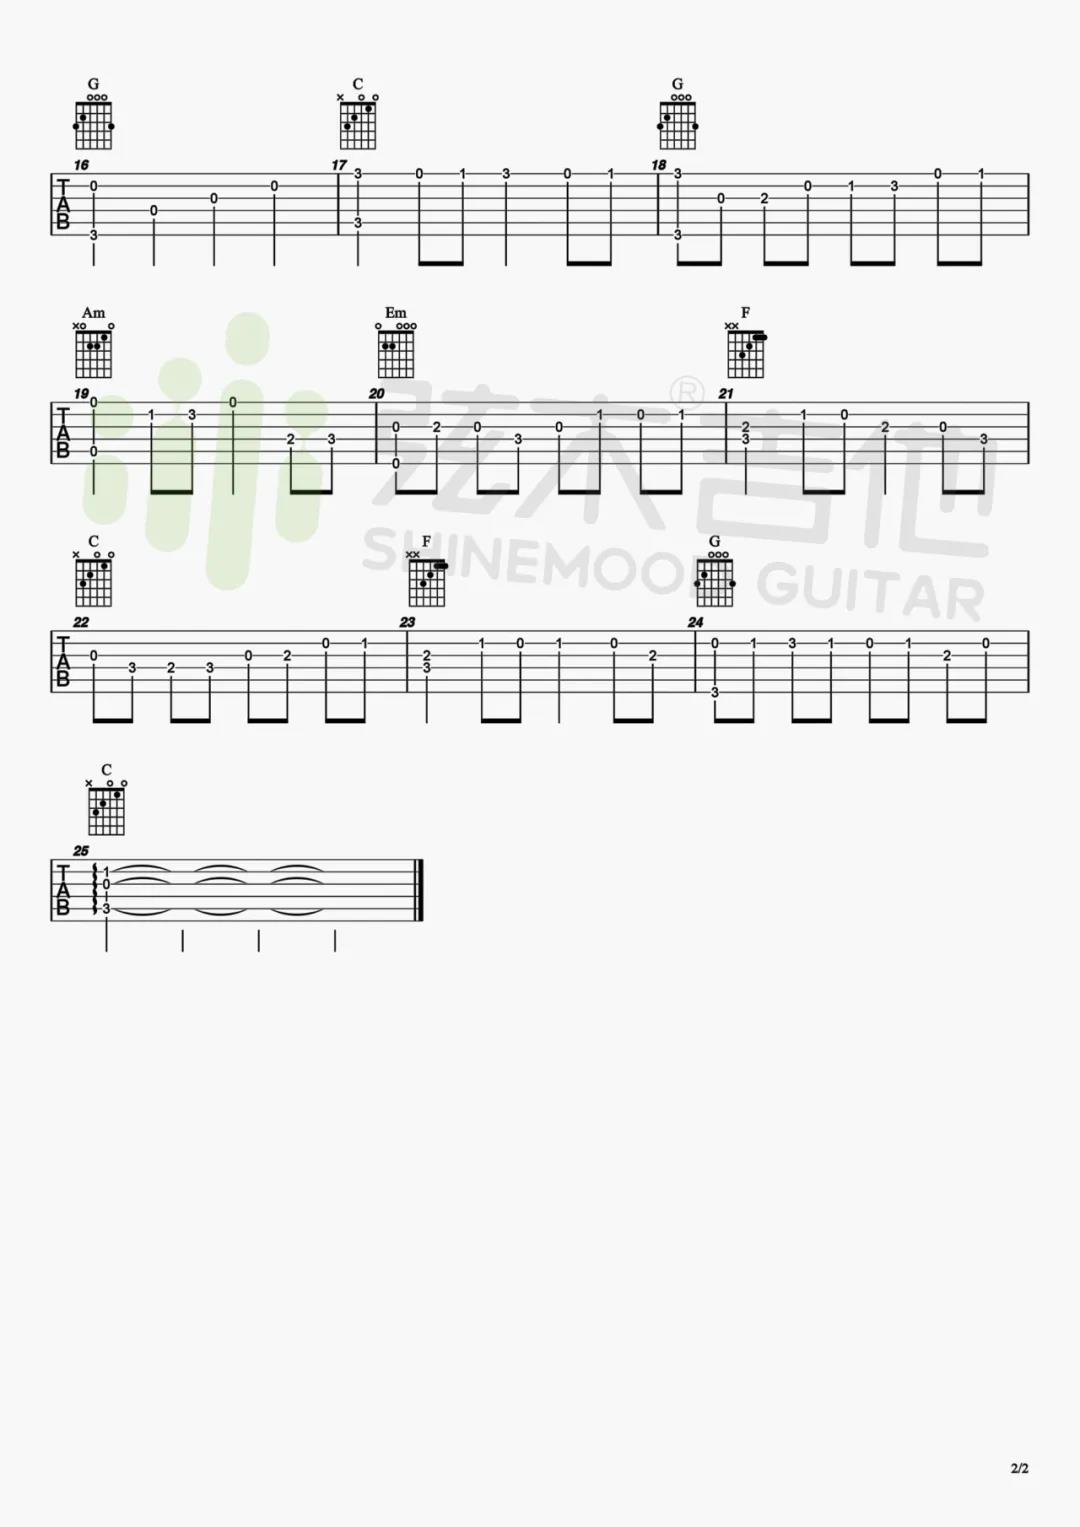 名曲《卡农 指弹 》吉他谱(C调)-Guitar Music Score